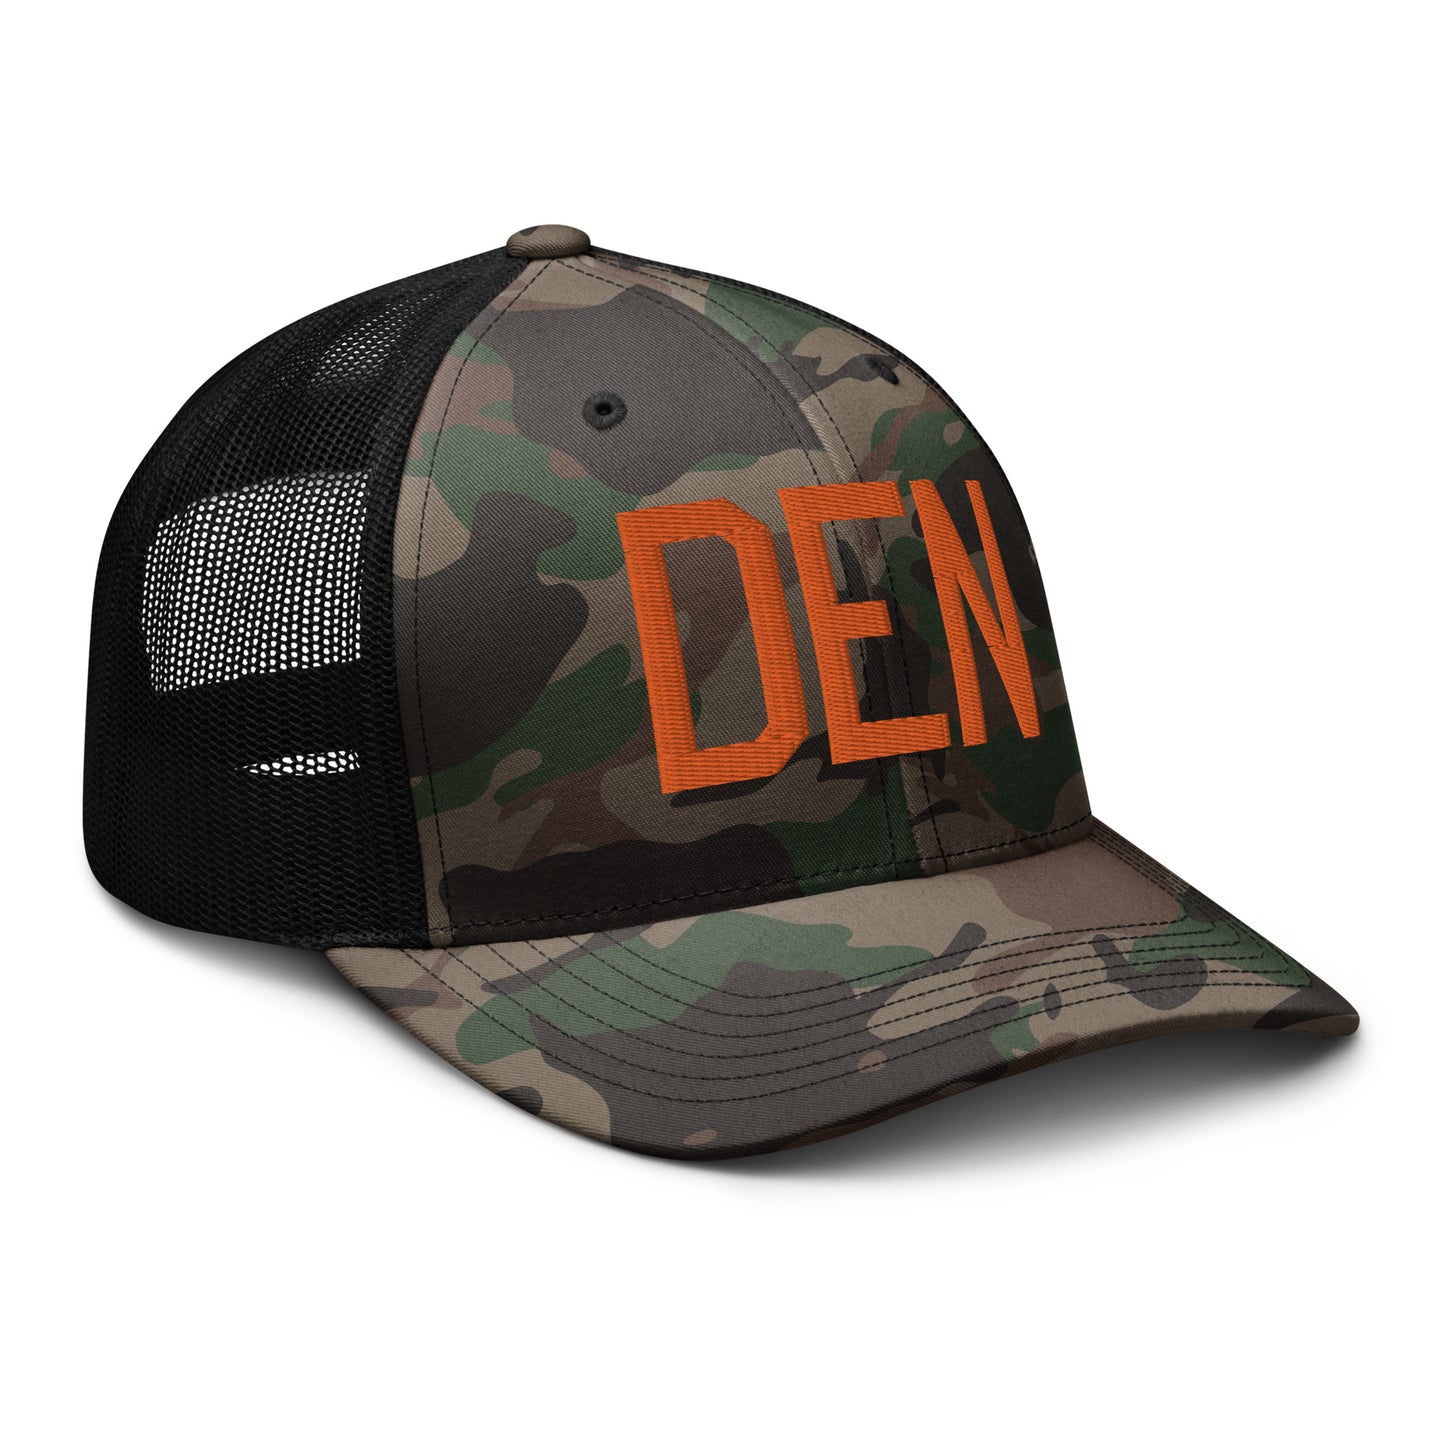 Airport Code Camouflage Trucker Hat - Orange • DEN Denver • YHM Designs - Image 12